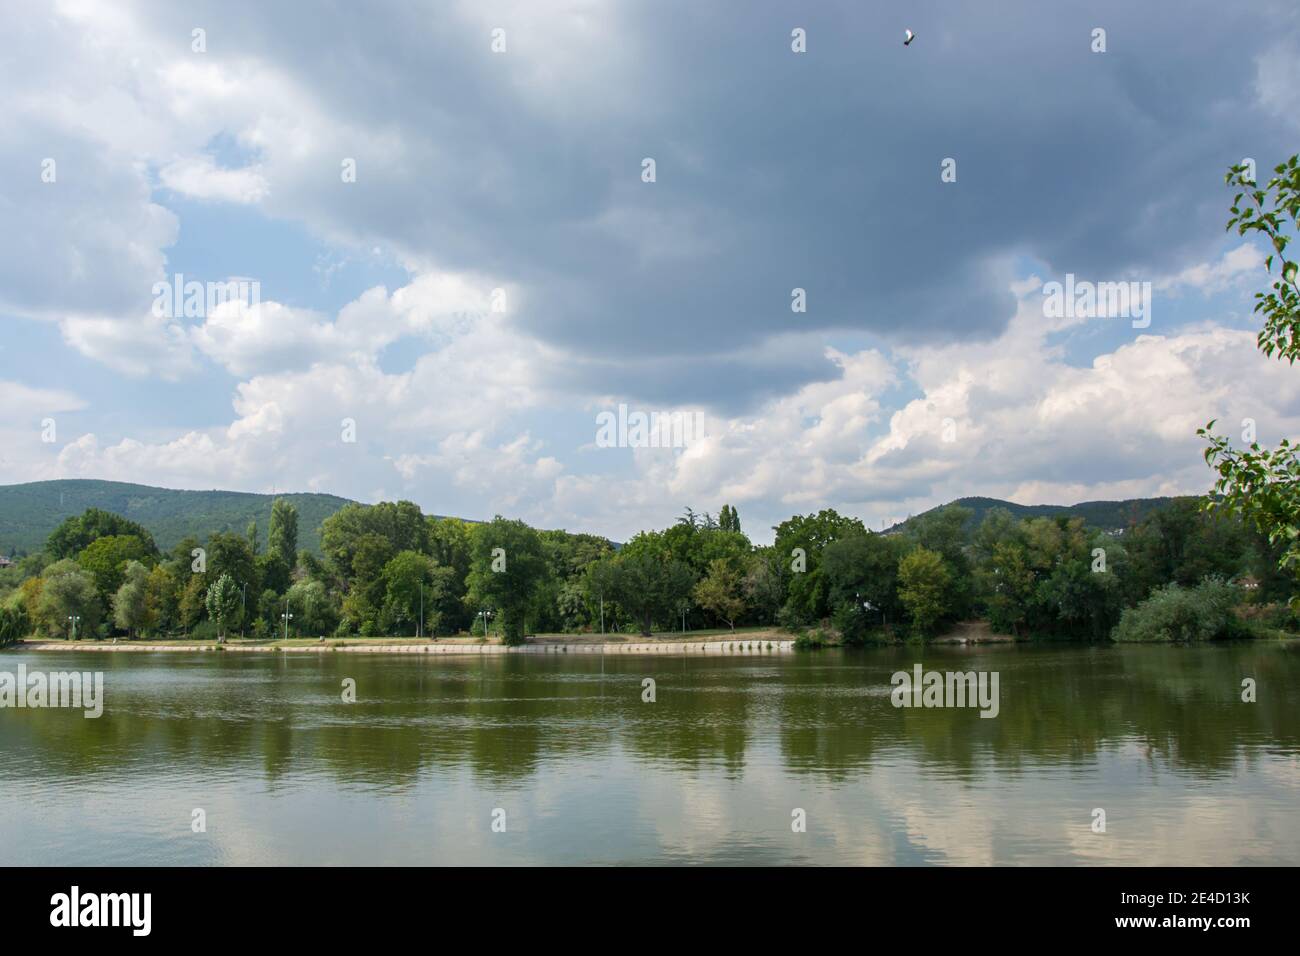 Schöne friedliche Natur, Bäume und Pflanzen auf einem See, Park, Sommersaison, Reflexion im Wasser, Zagorka See, Stara Zagora, Bulgarien Stockfoto